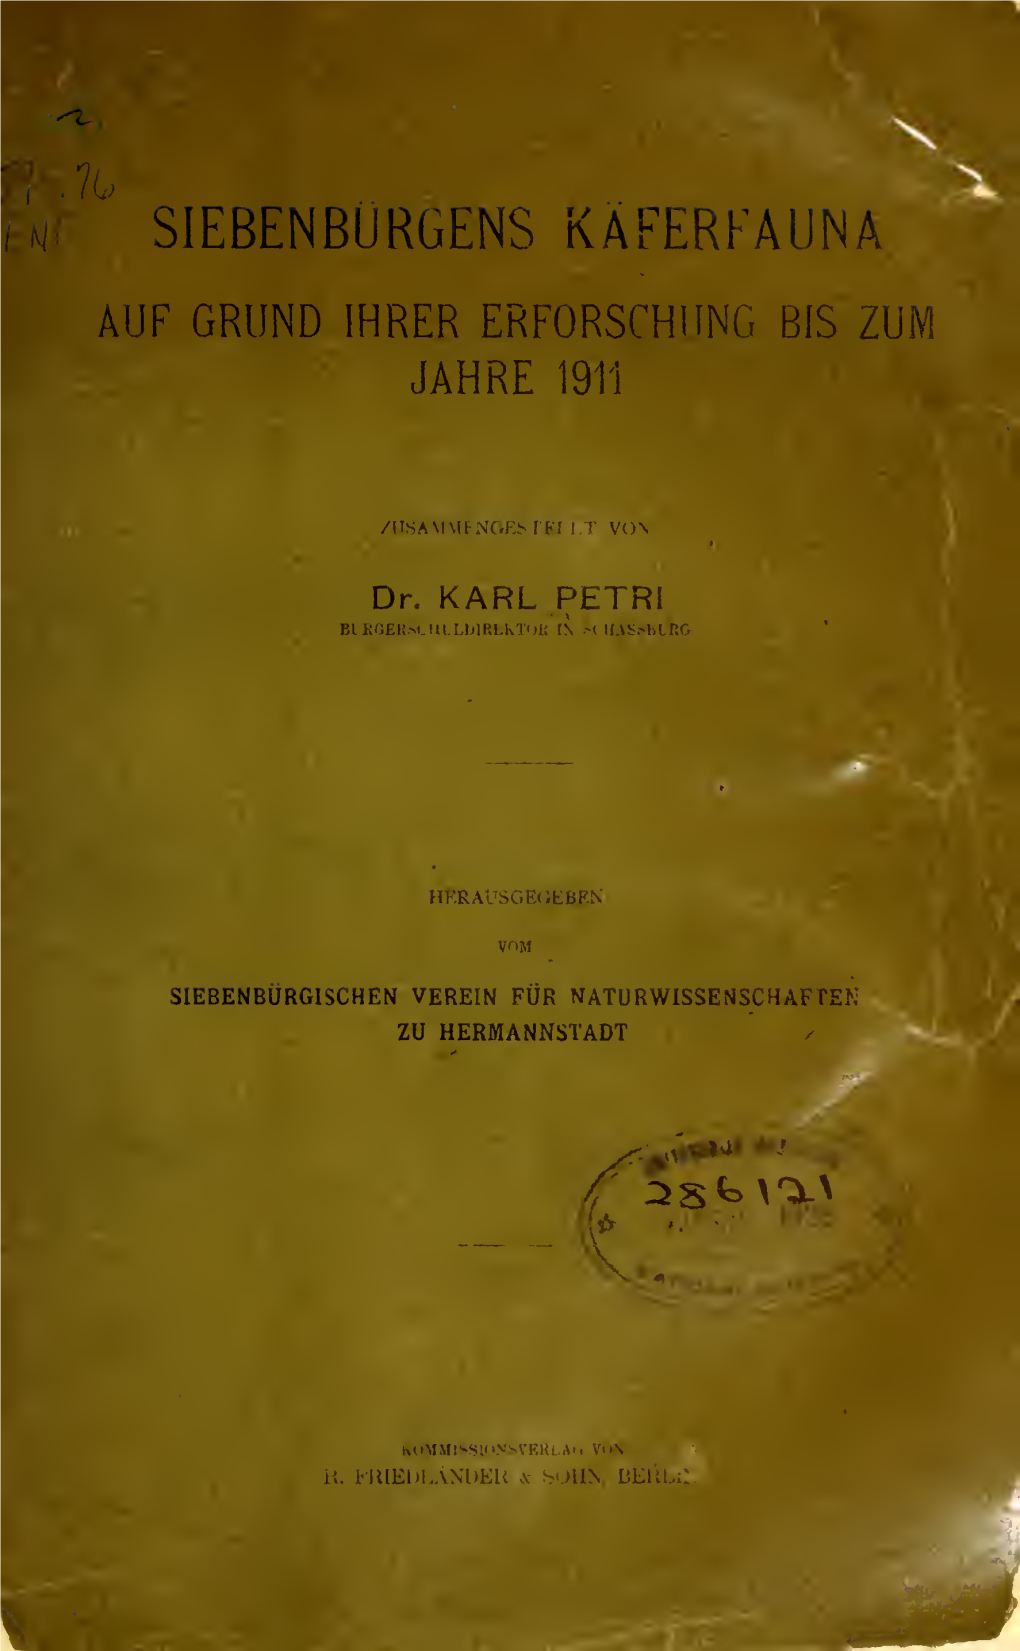 Siebenbürgens Käferfauna Auf Grund Ihrer Erforschung Bis Zum Jahre 1911